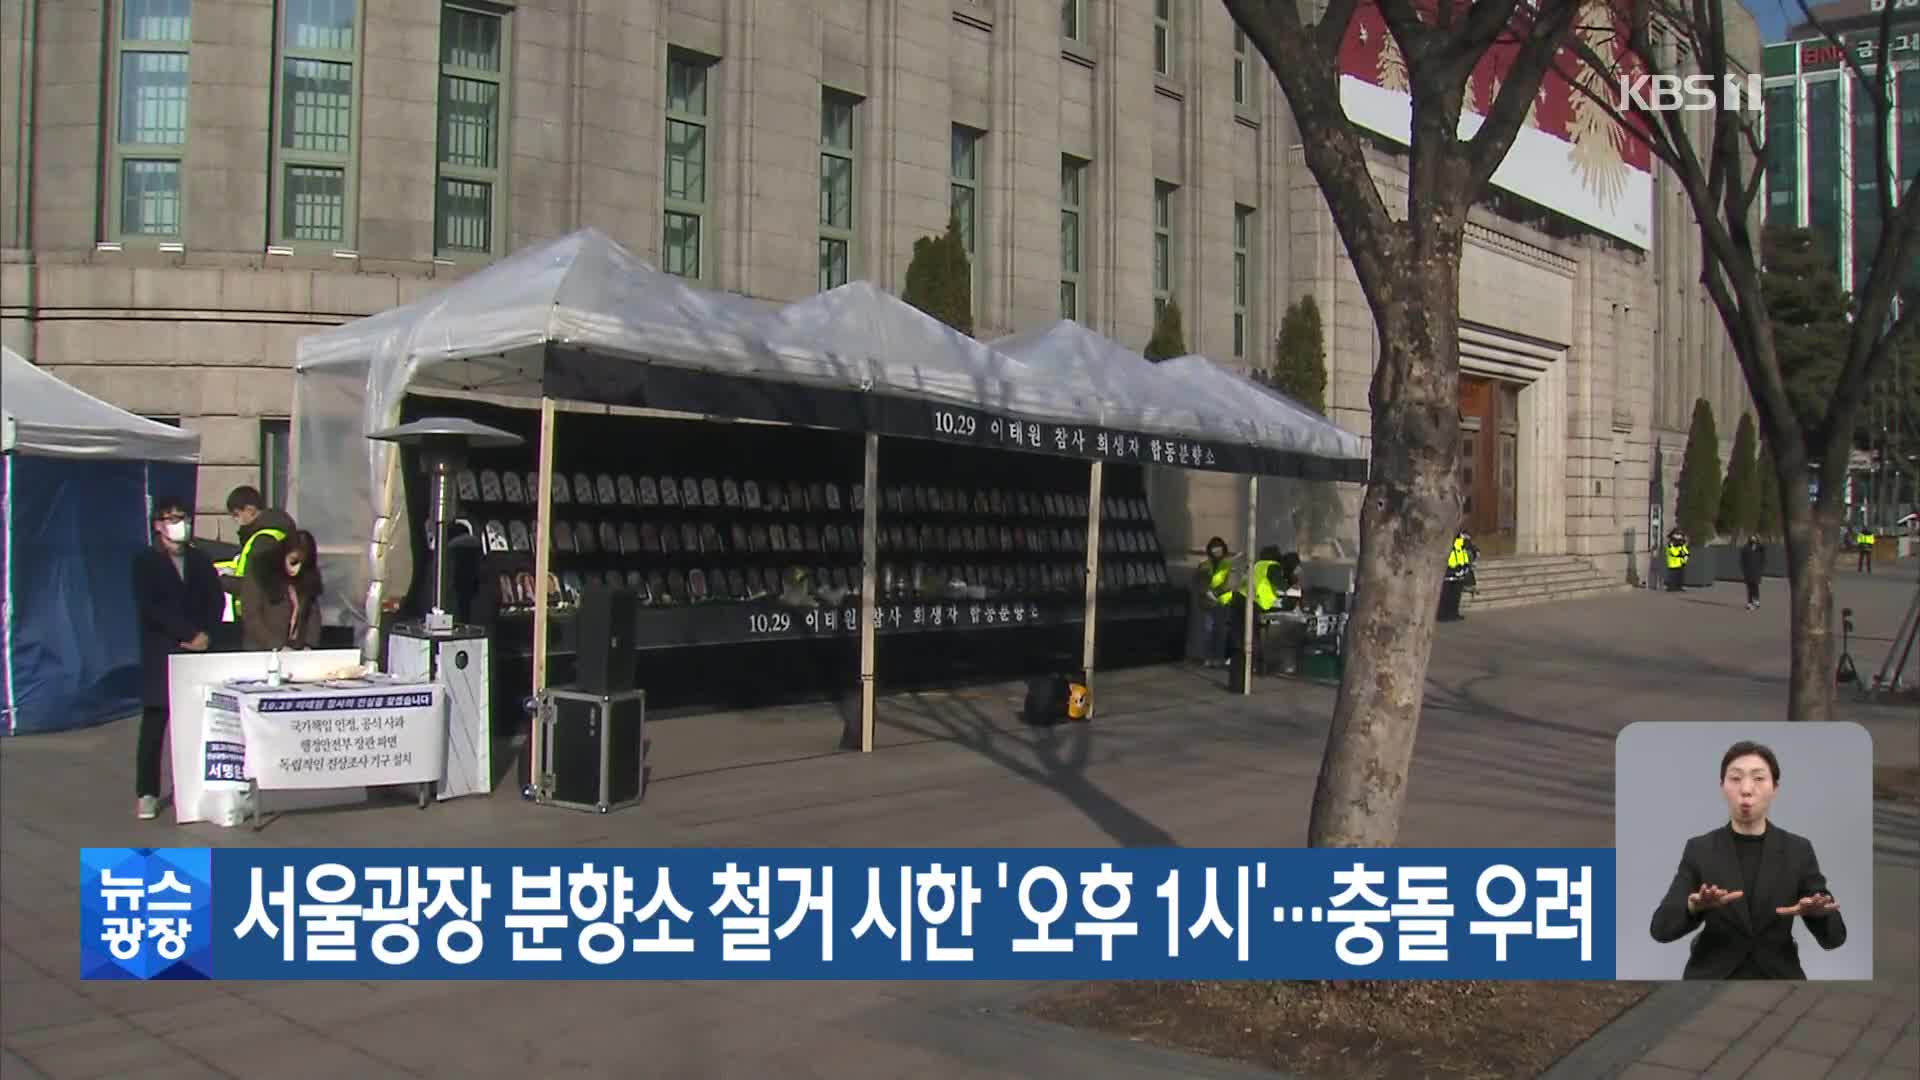 서울광장 분향소 철거 시한 ‘오후 1시’…충돌 우려